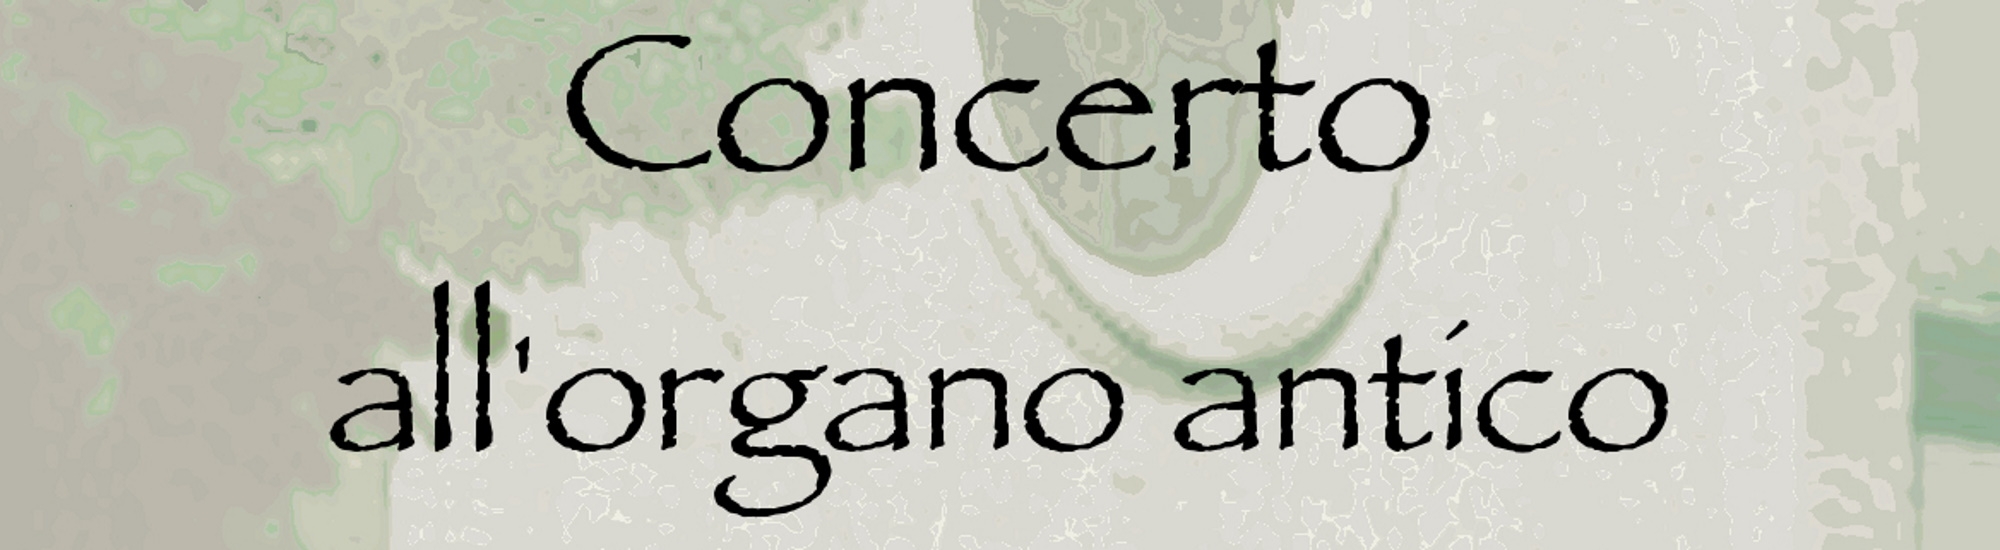 Immagine Festa Madonna Rosario: concerto all'organo antico